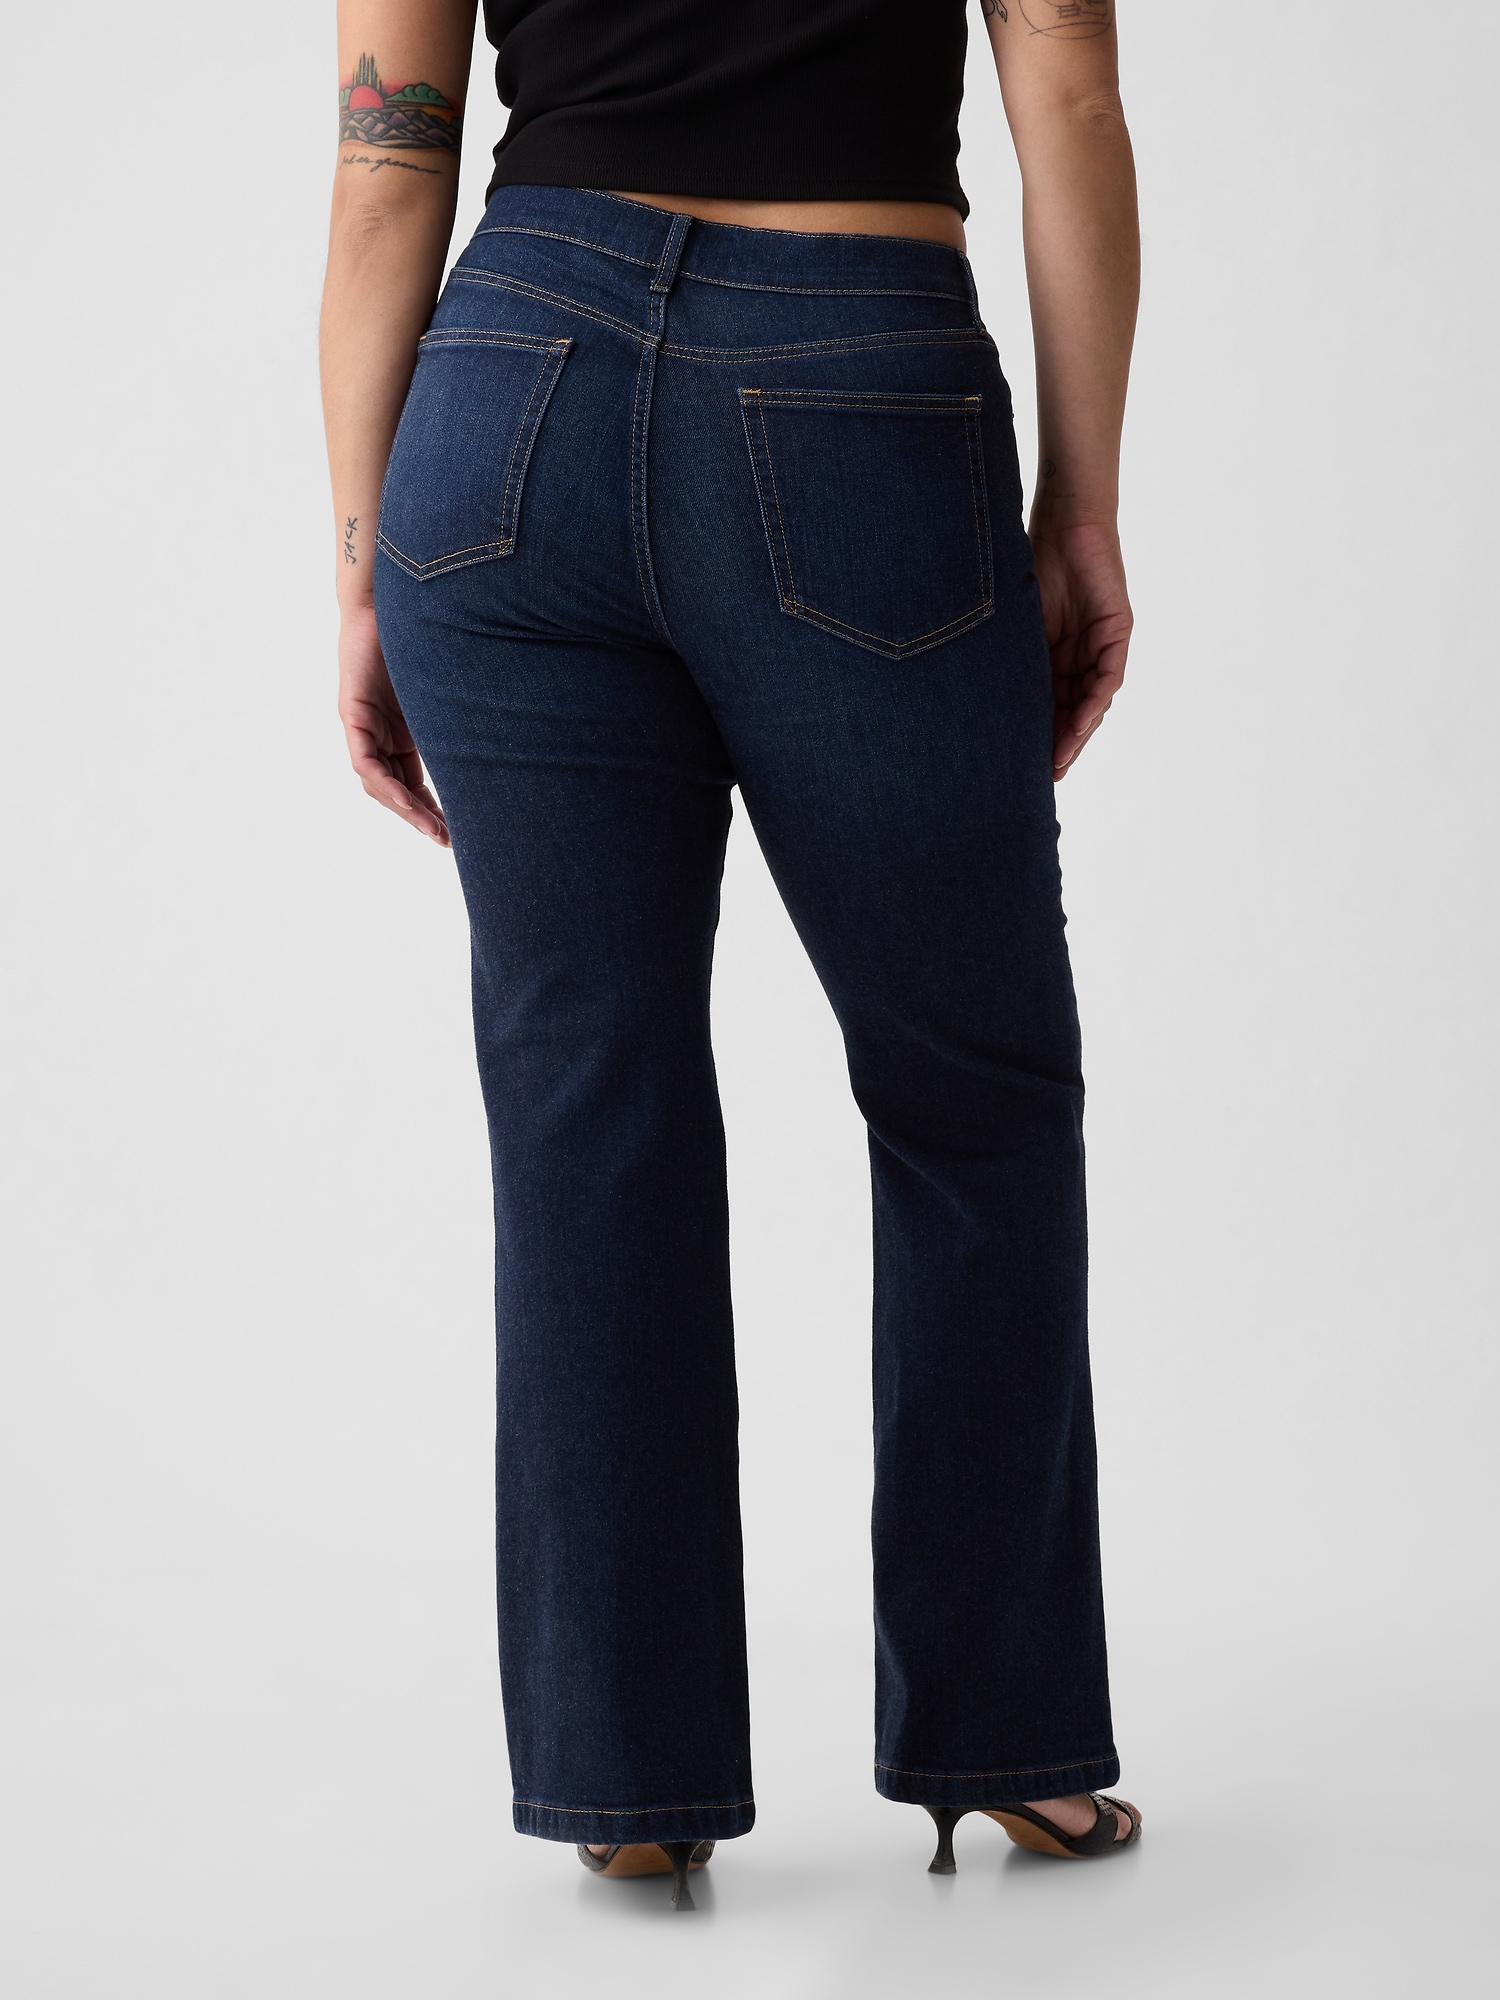 16 Jeans Flare Pants Female Women's Jeans Large Size Boyfriend Jeans Women  @ Best Price Online